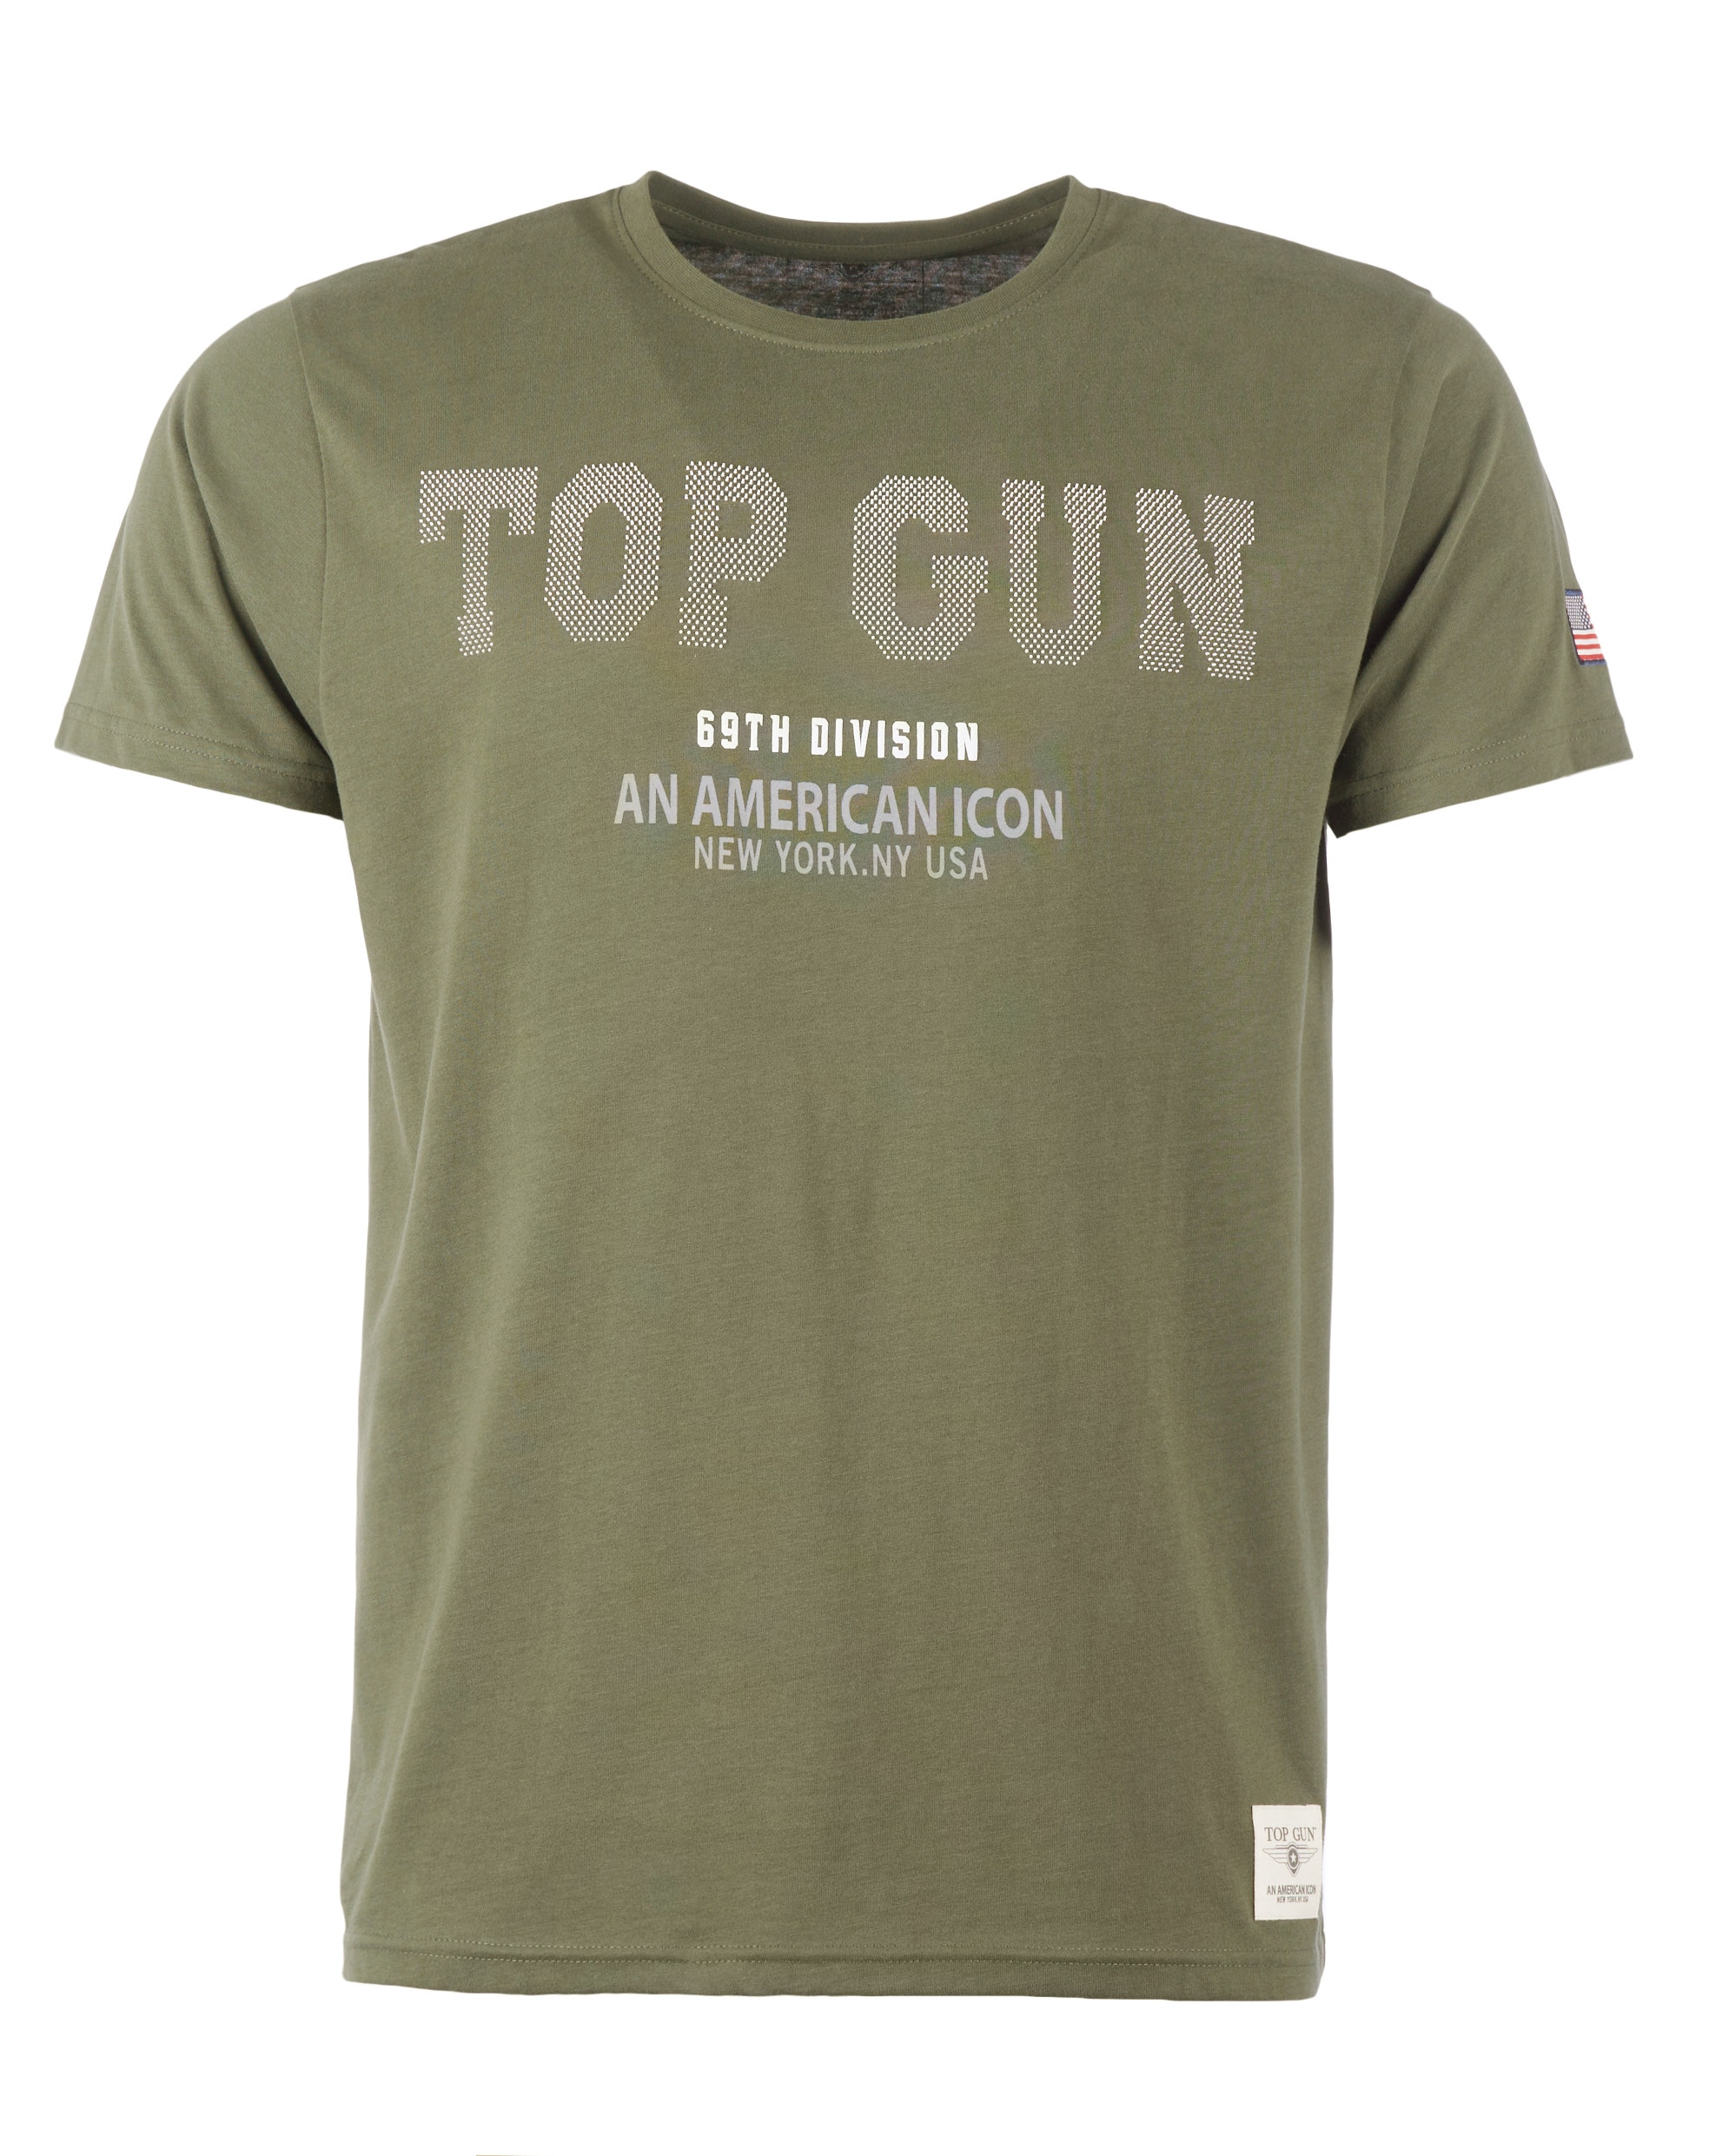 Vorschlag TOP GUN T-Shirt »T-Shirt TG20213006« ♕ bei